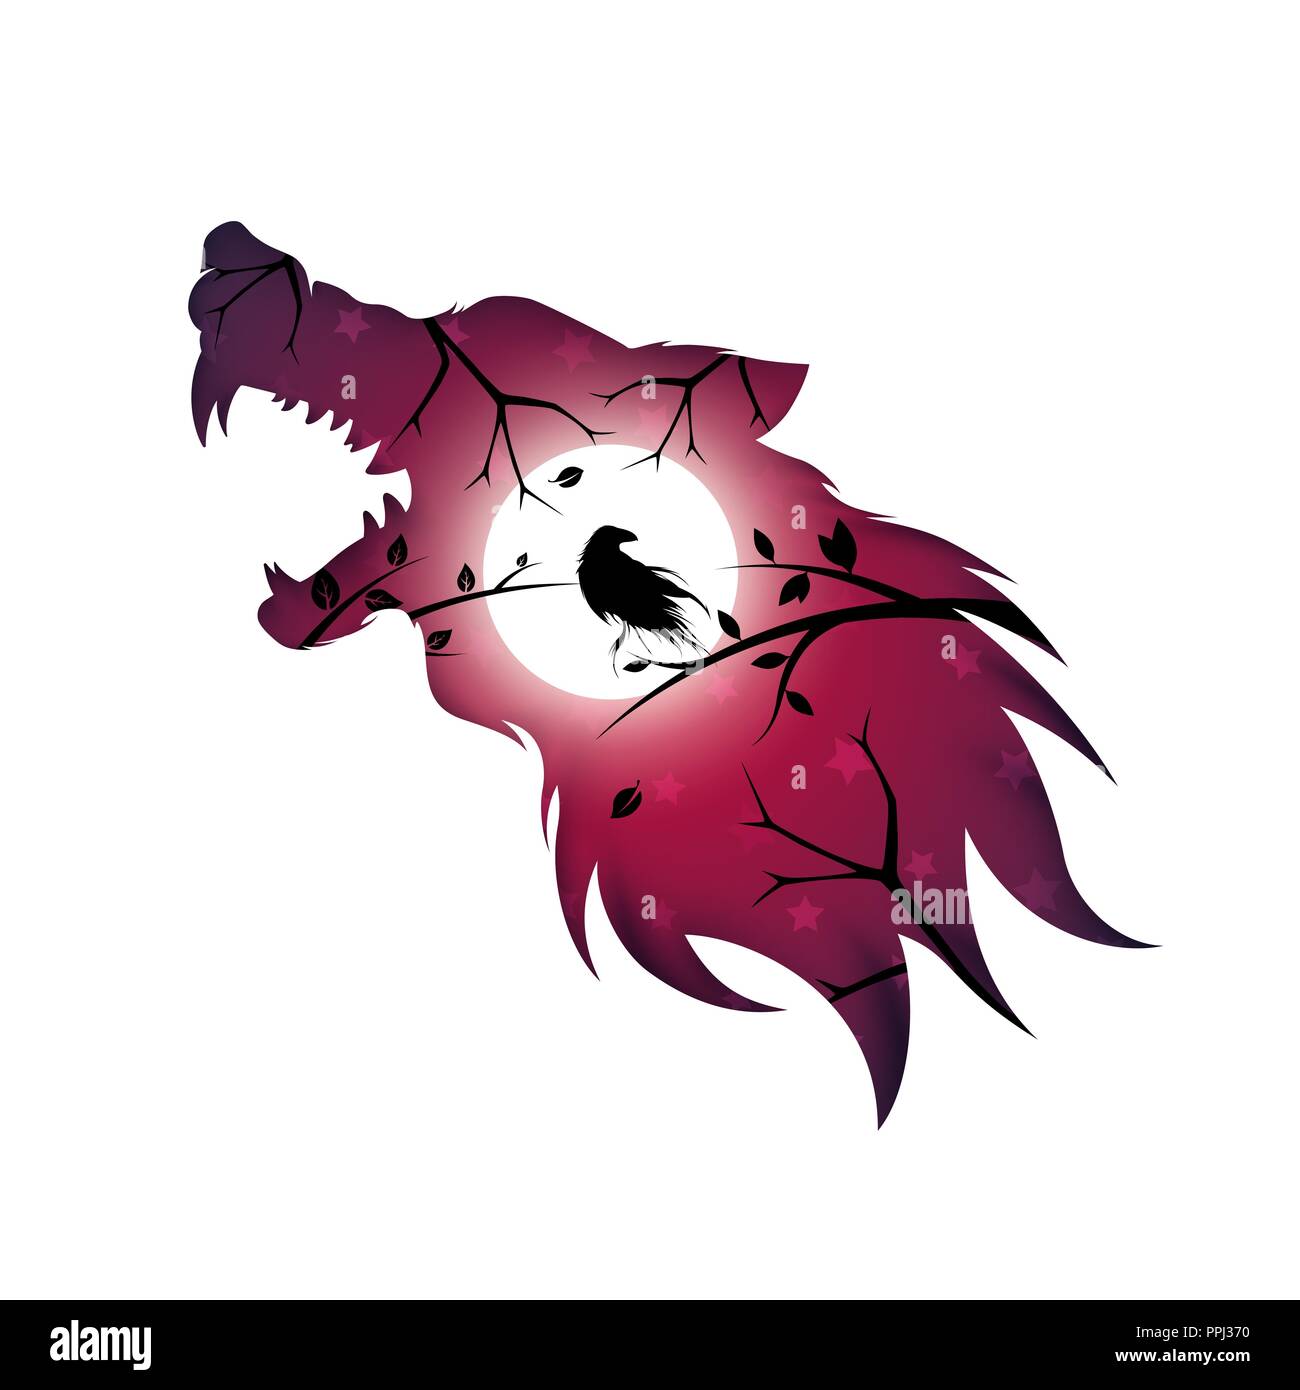 Hombre lobo, lobo, perro, Raven crow - papel ilustración. Ilustración del Vector